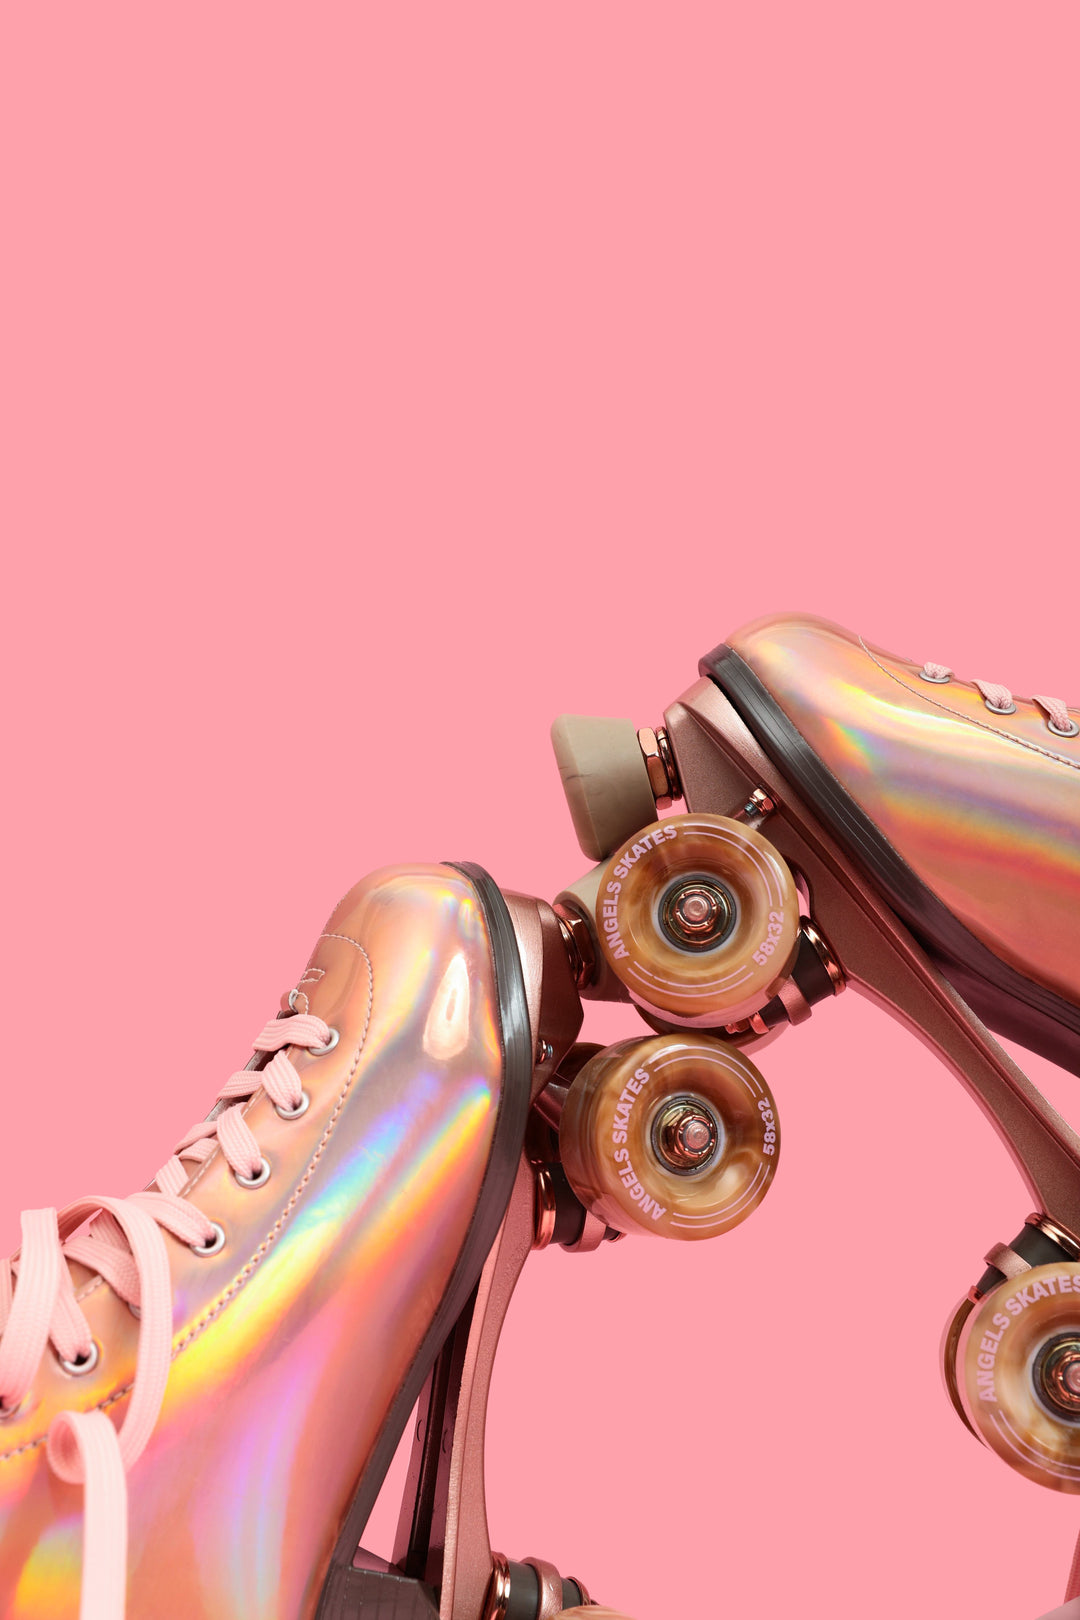 2.0 Angel Dust Holographic Rose Gold Roller Skates